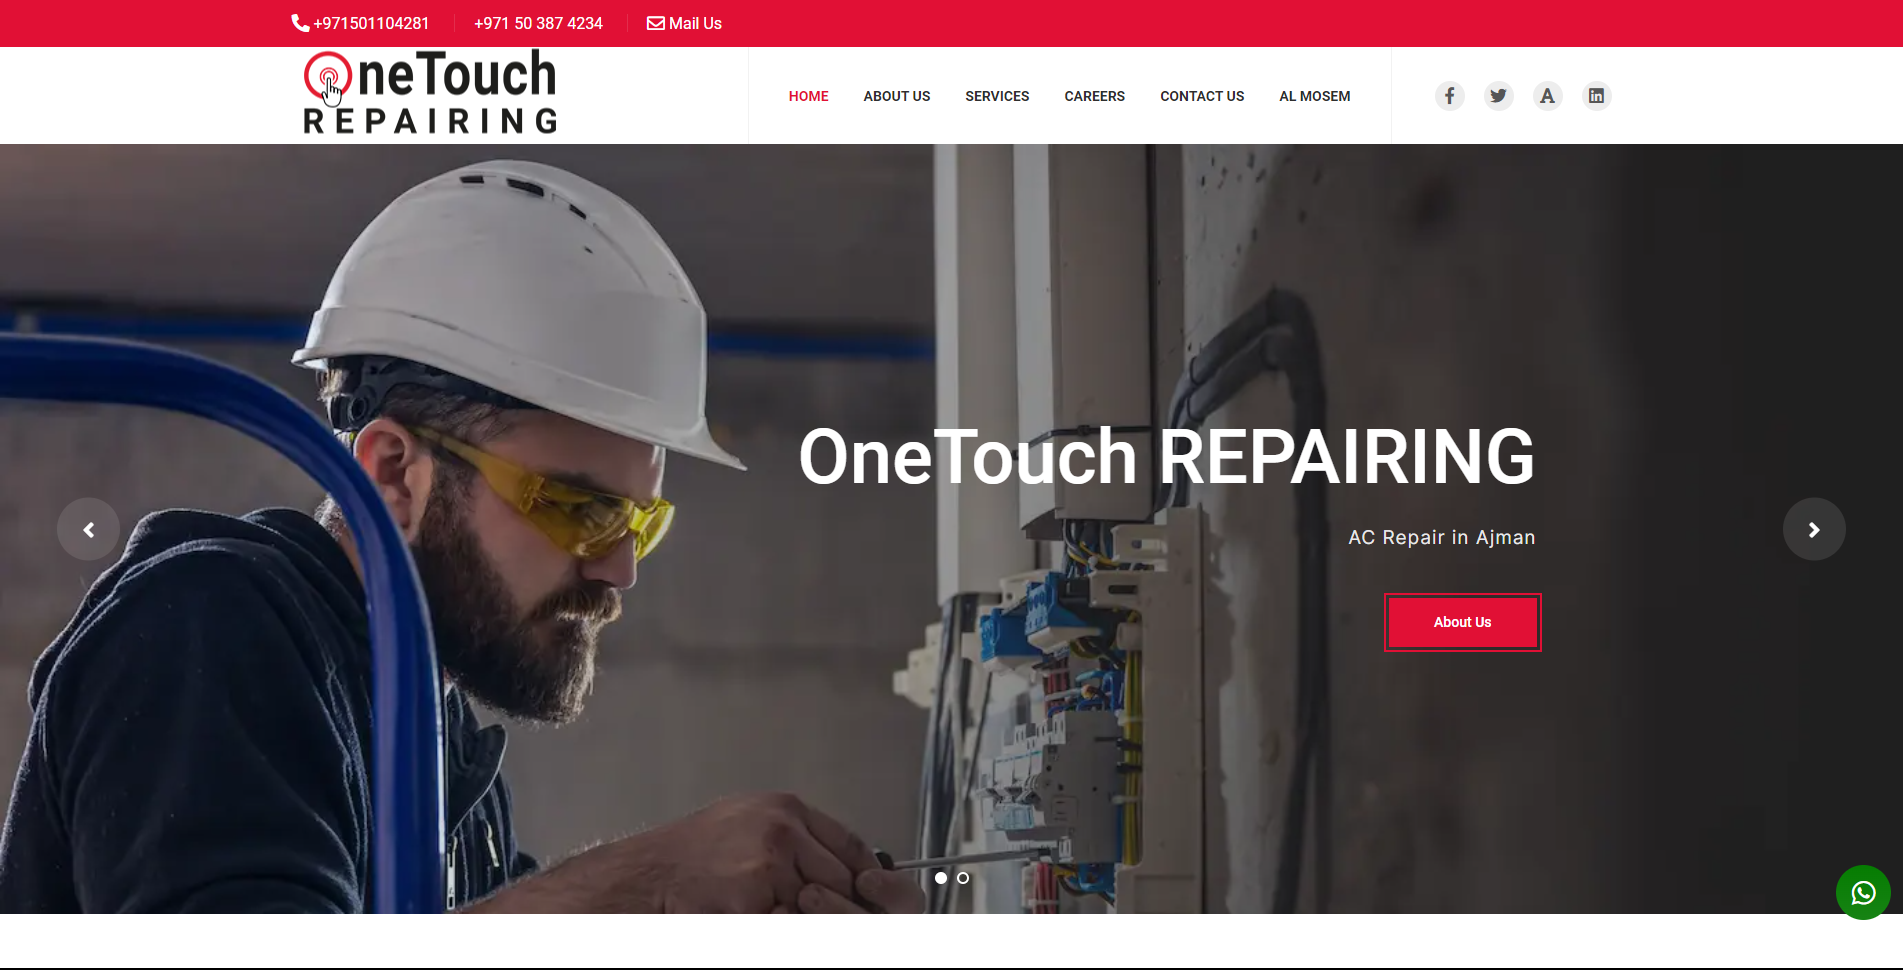 OneTouch Repairing